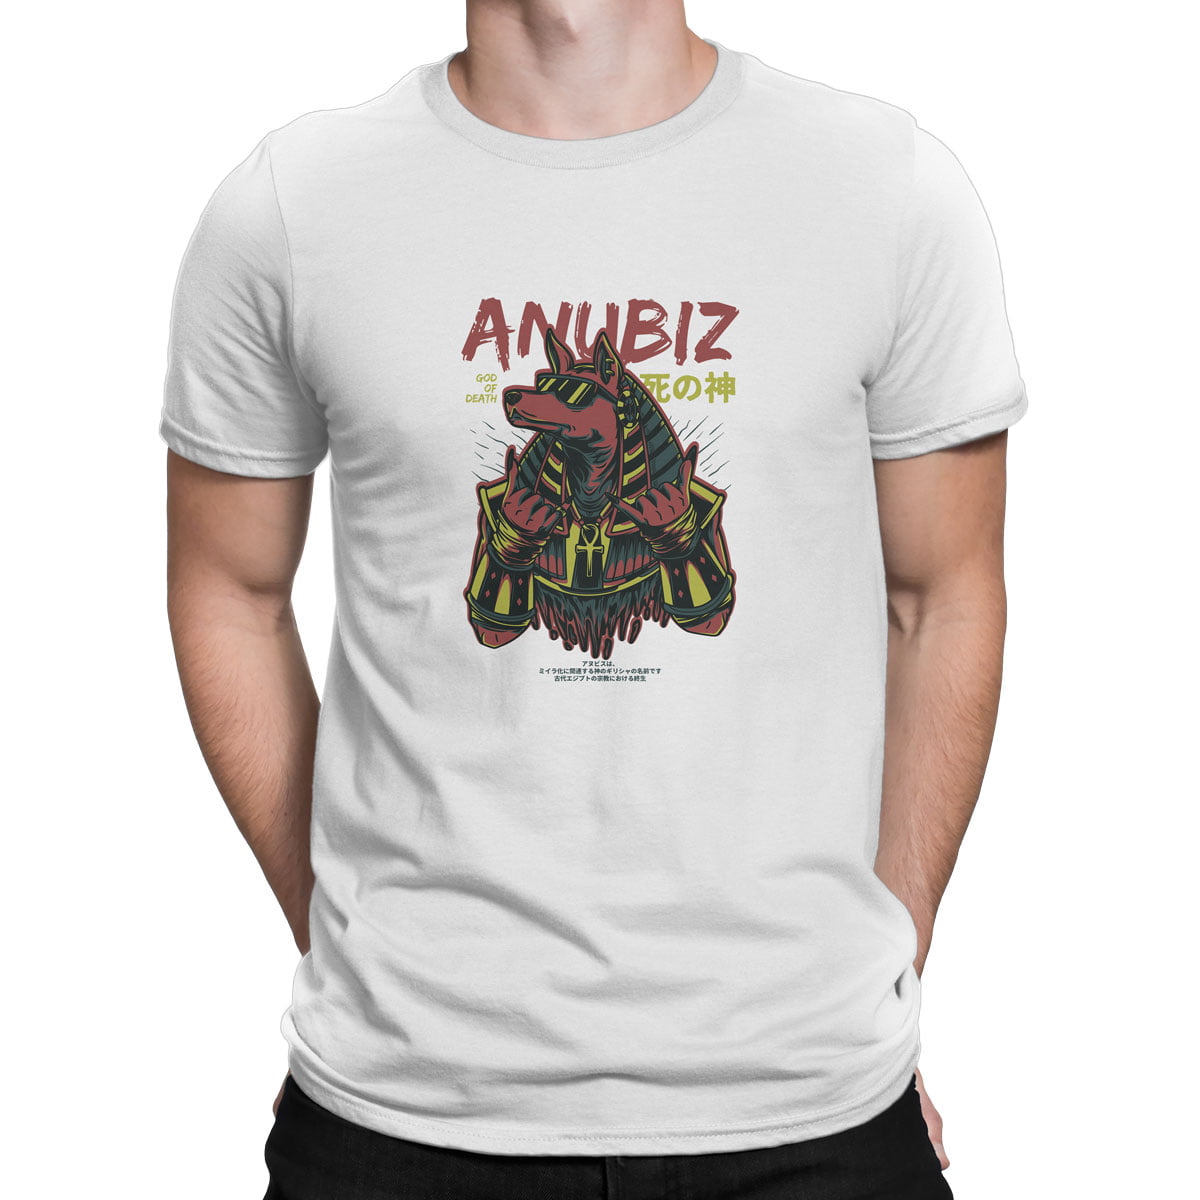 Anubis erkek tisort b - anubis (anubiz) baskılı erkek t-shirt - figurex